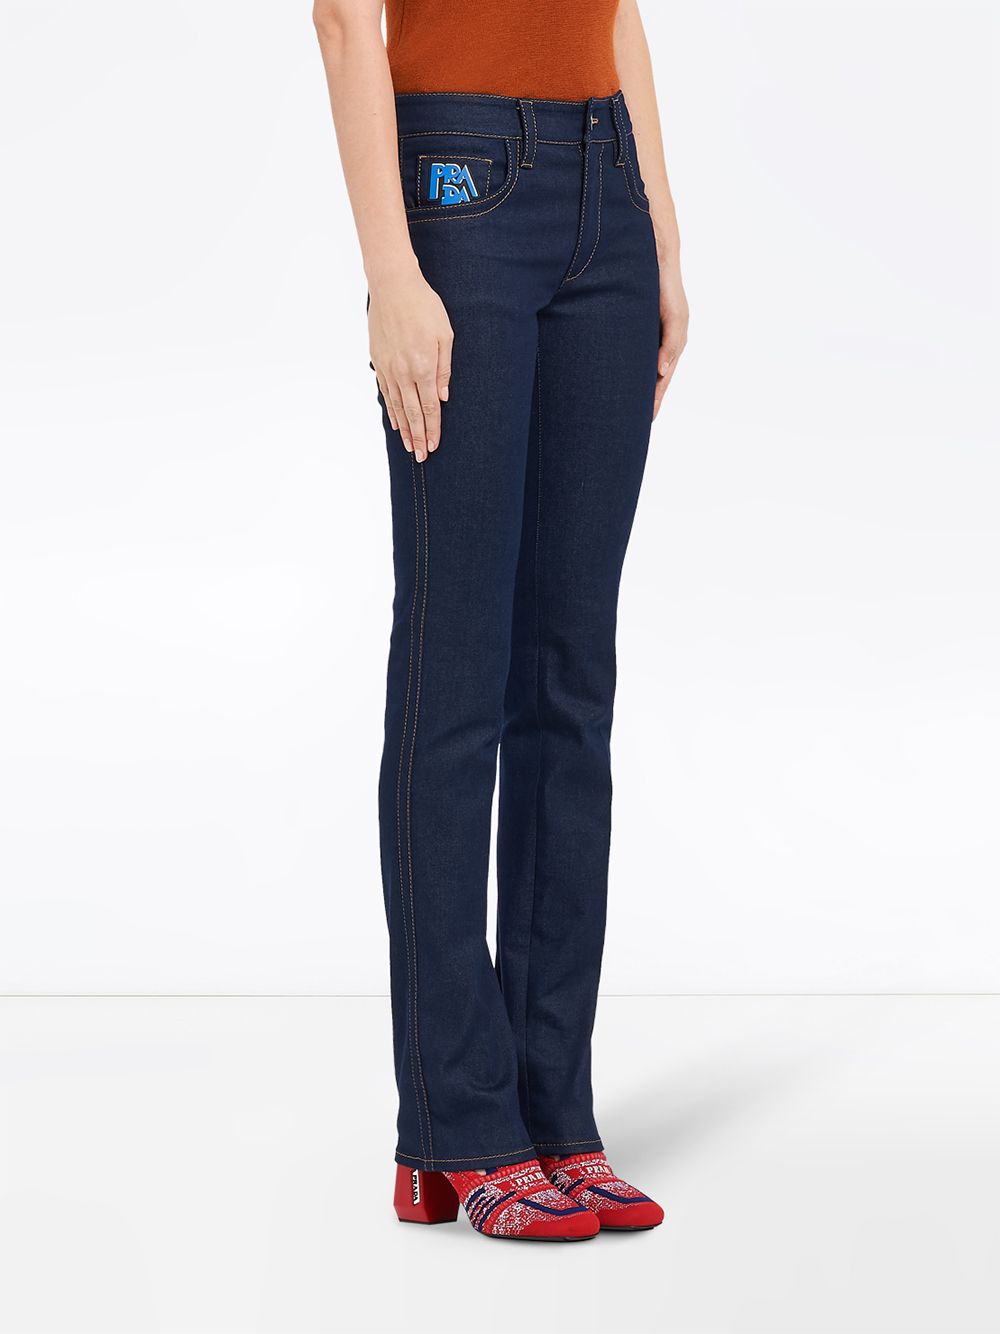 фото Prada джинсы пятикарманной модели